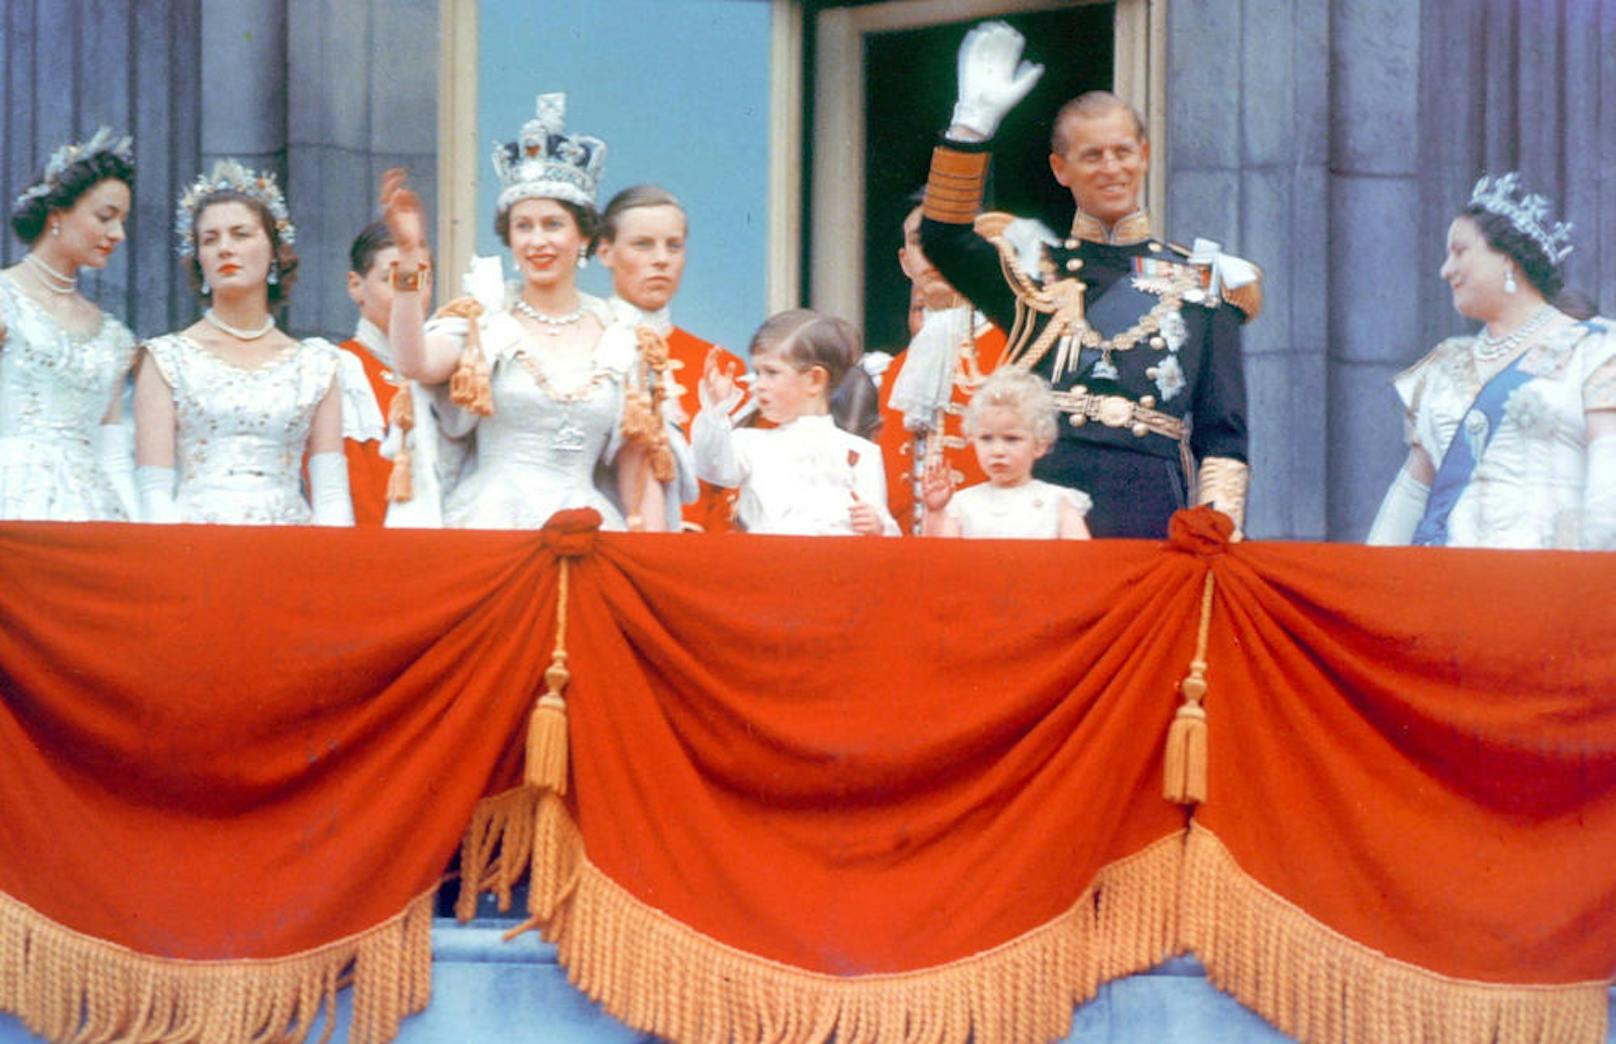 Bei ihrer Krönung musste Prinz Philip vor der Queen auf die Knie sinken.

Foto: 
1953 - Queen Elizabeth II mit der royalen Familie am Balkon des Buckingham Palace